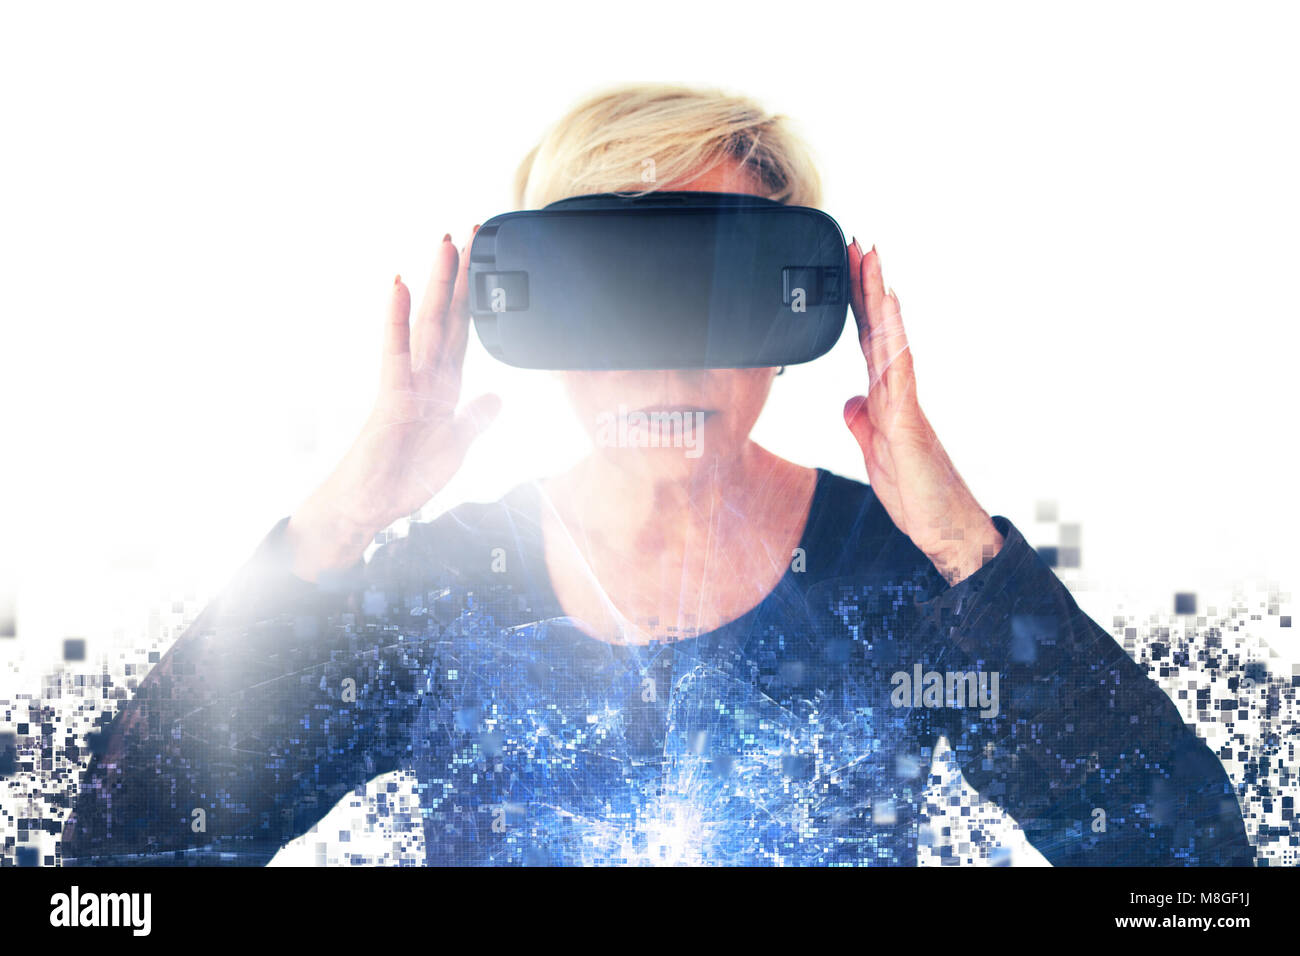 Eine ältere Frau in virtual reality Brillen ist durch Pixel verteilt. Konzeptionelle Fotografie mit visuellen Effekten mit einer älteren Person mit moderner Technologie. Stockfoto